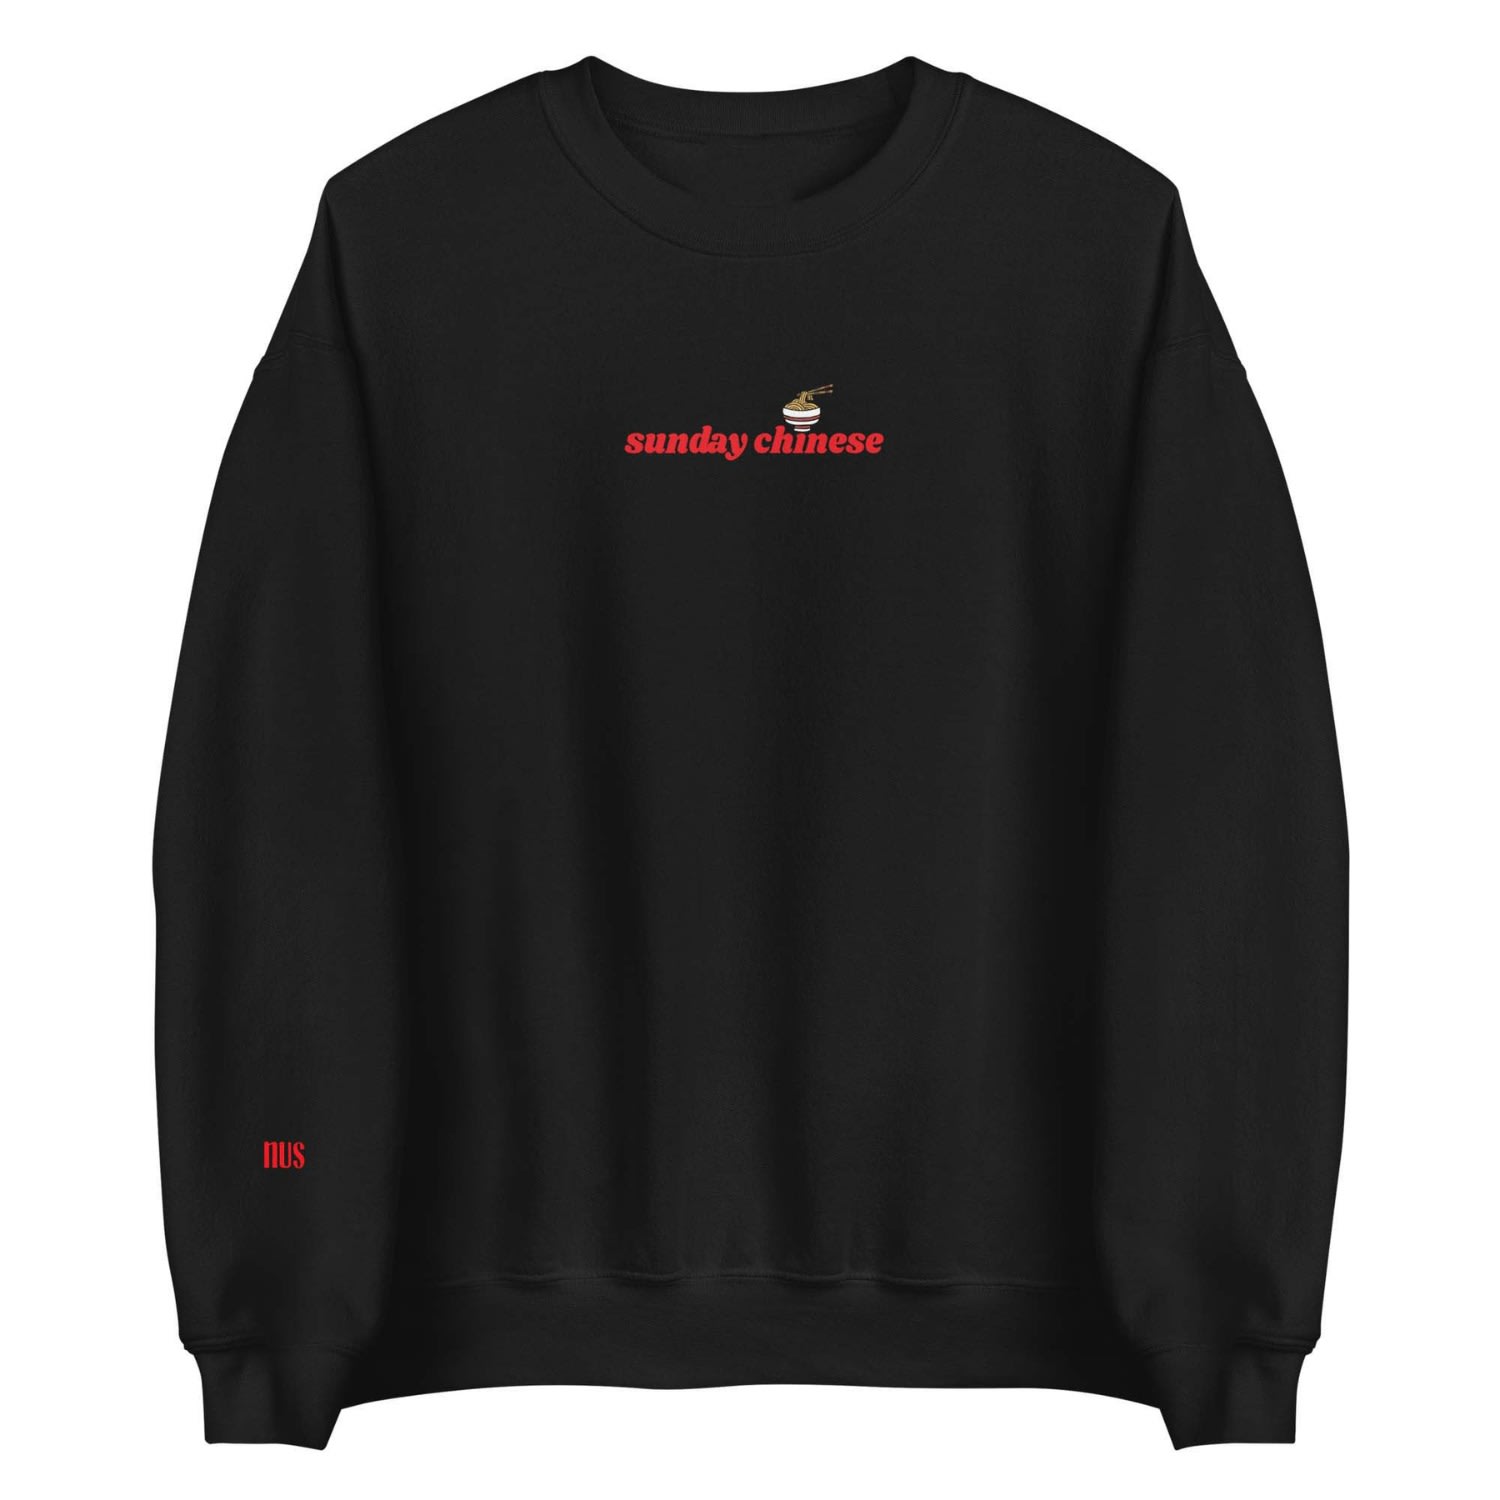 Men's Sunday Chinese Sweatshirt - Black Small NUS